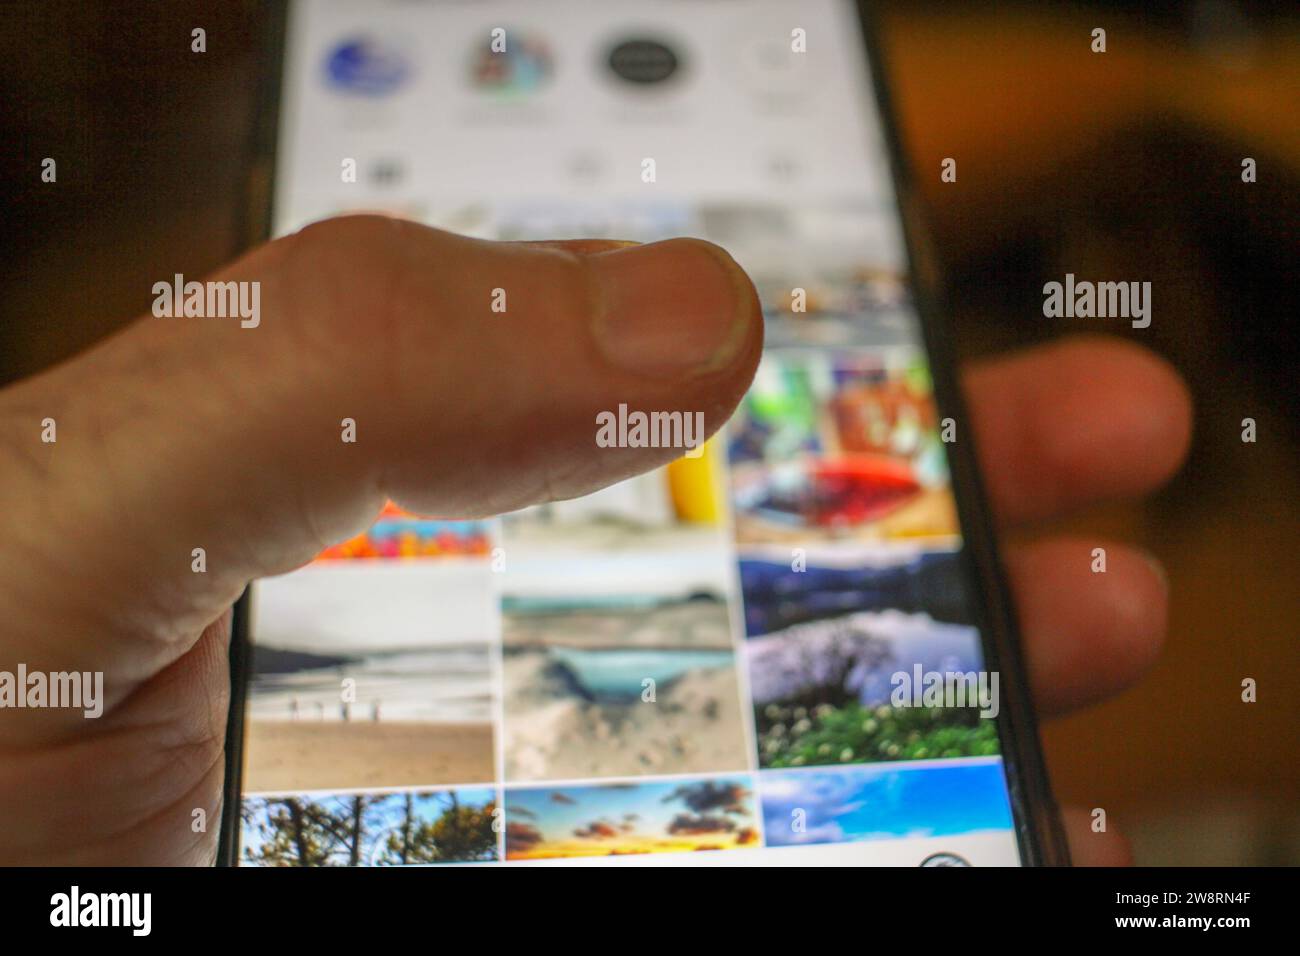 Digitale Verbindung: Eine Berührung auf dem mobilen Bildschirm Stockfoto